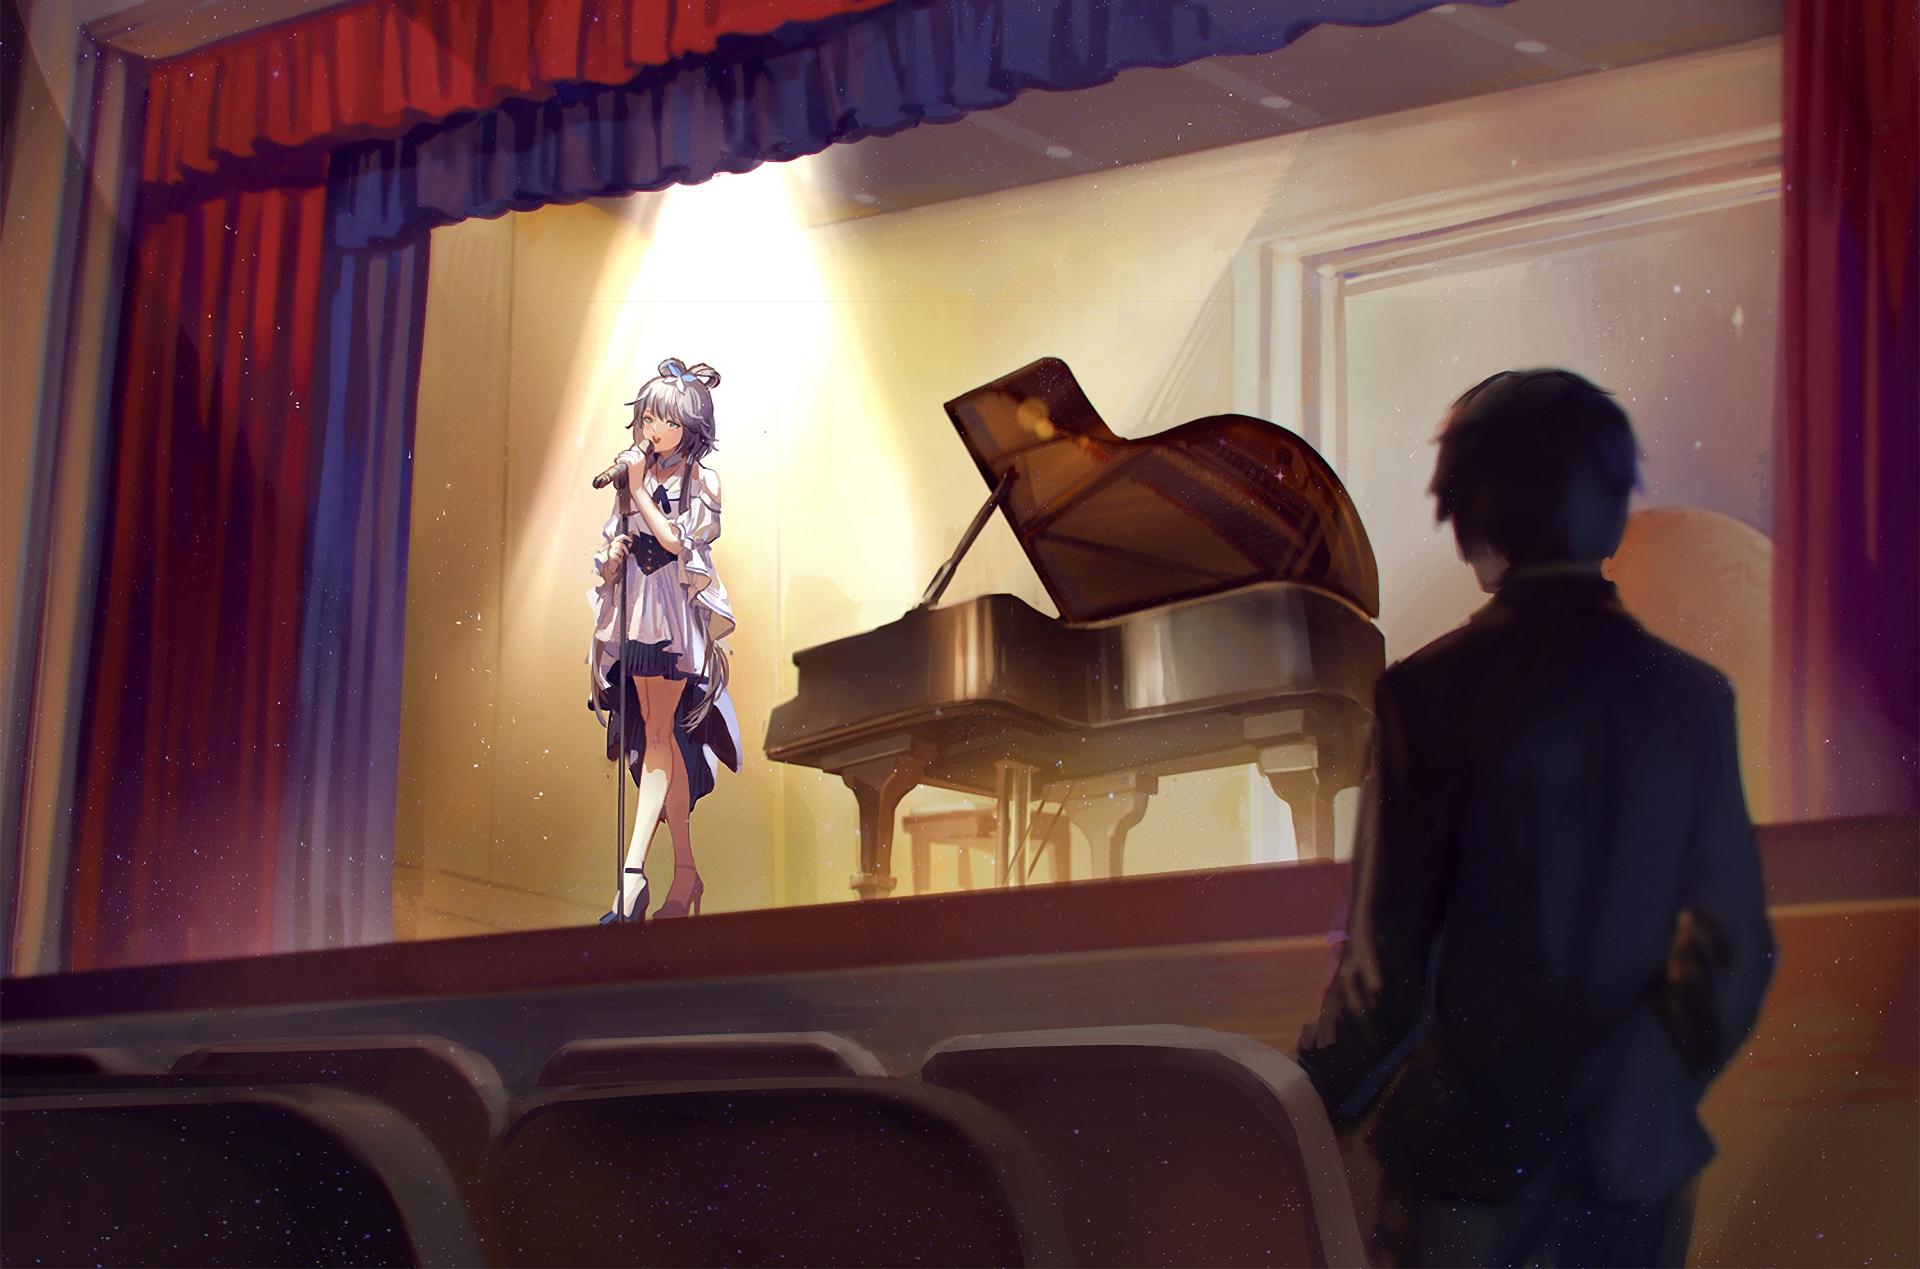 Descarga gratuita de fondo de pantalla para móvil de Vocaloid, Animado, Luo Tianyi.